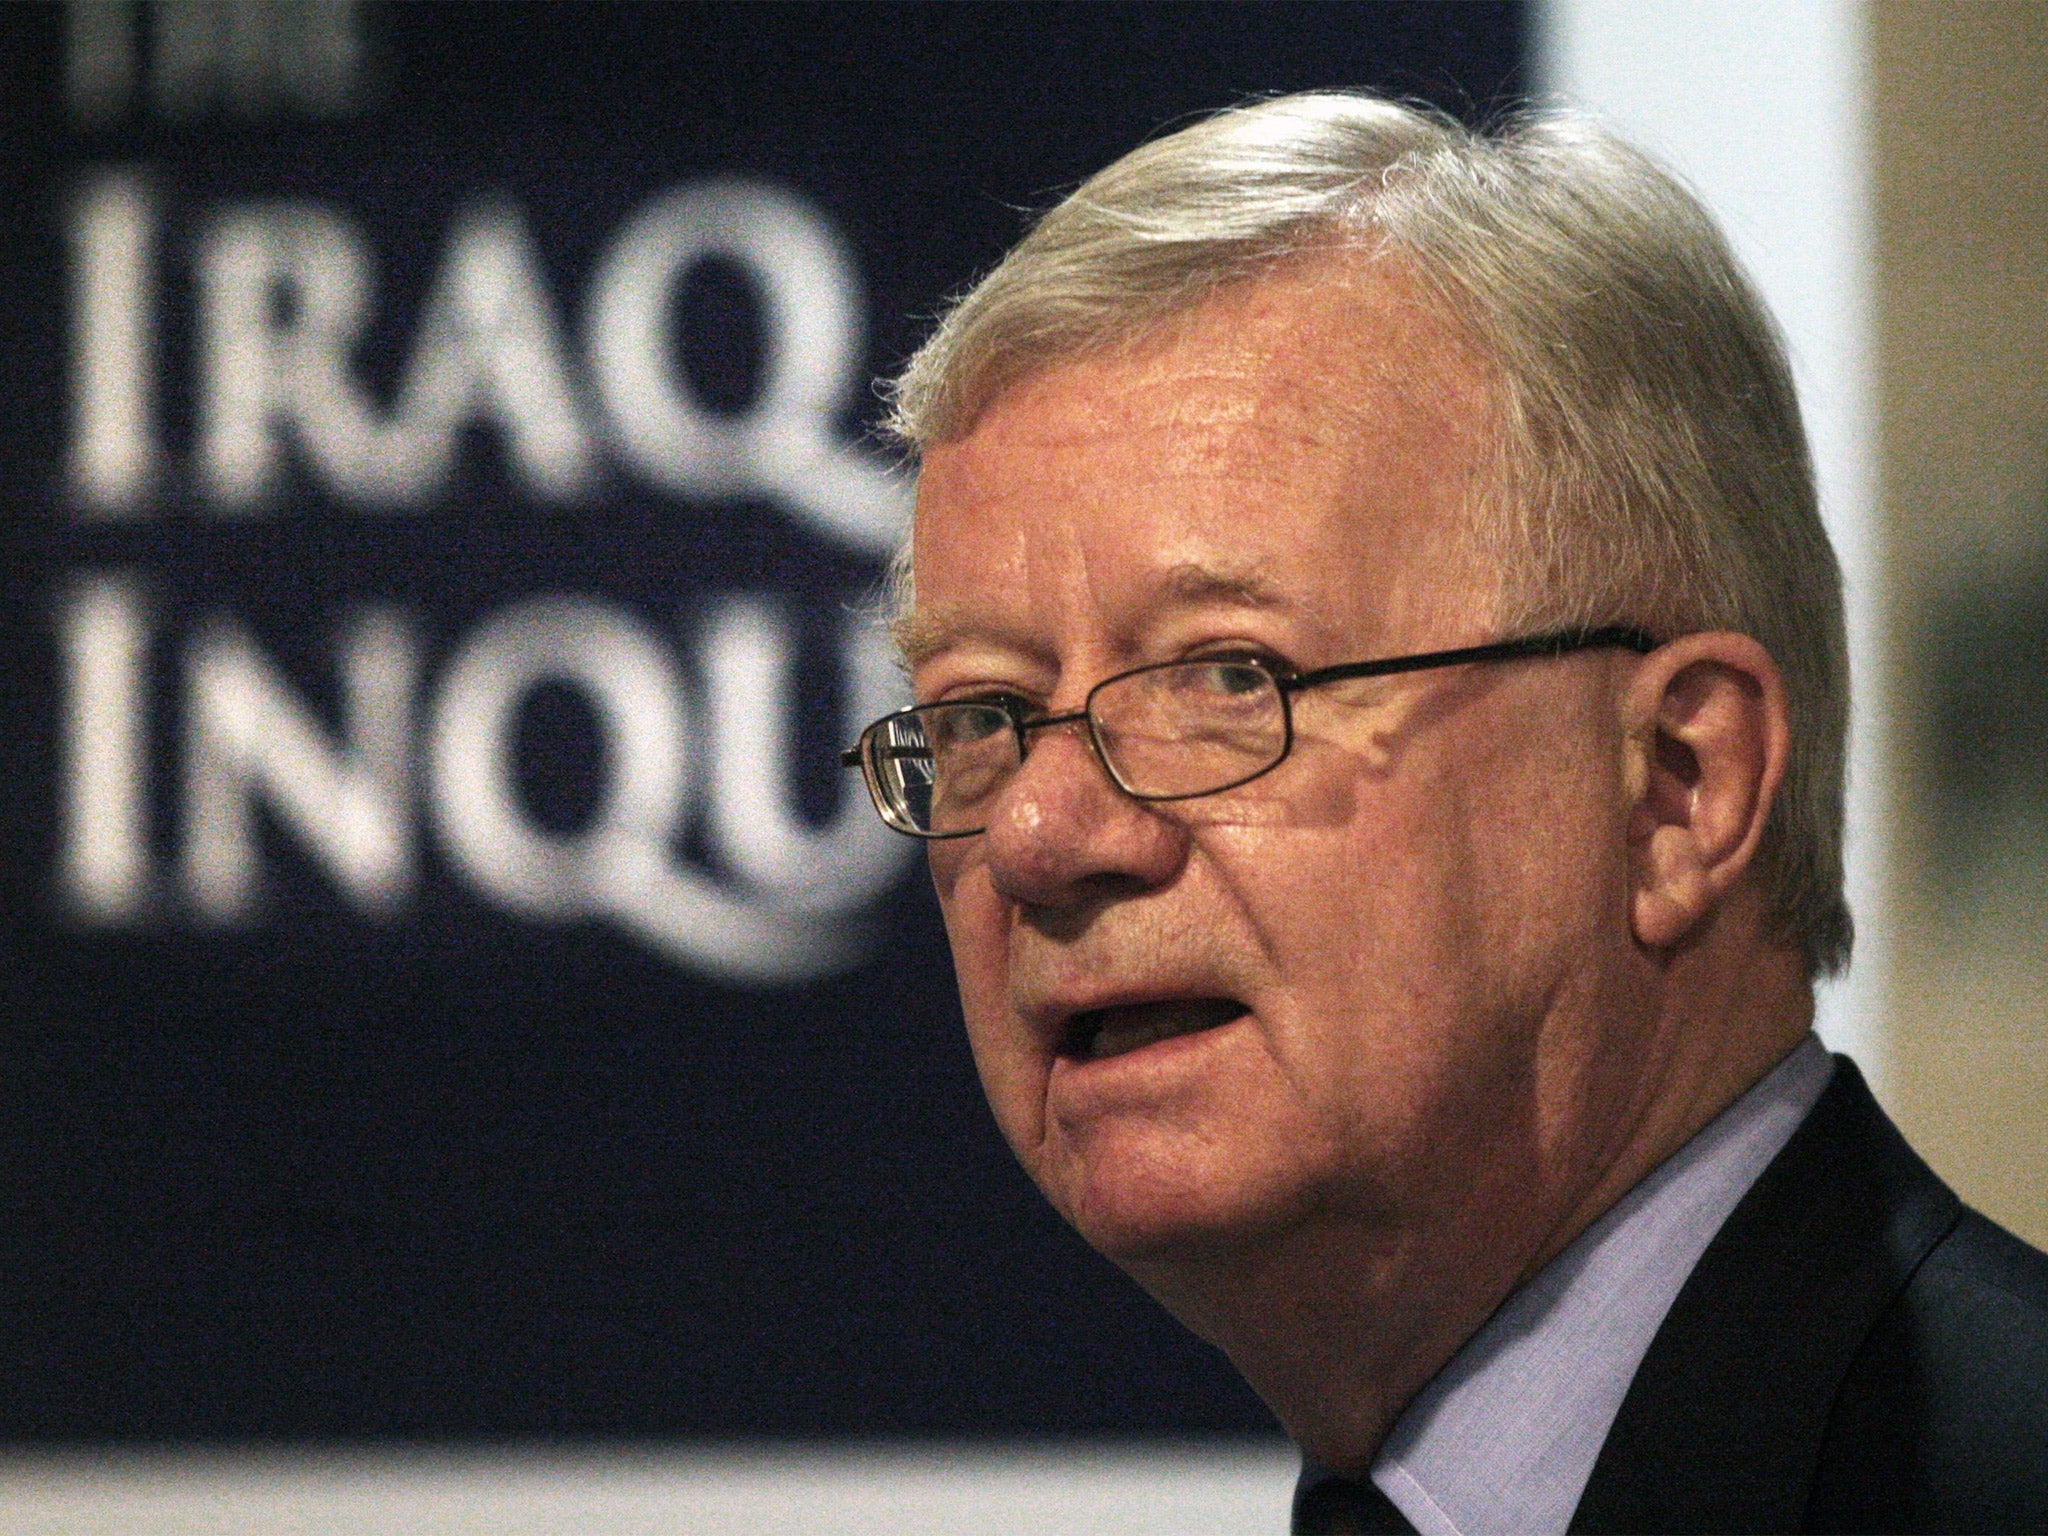 Sir John Chilcot, Chairman of the Iraq Inquiry